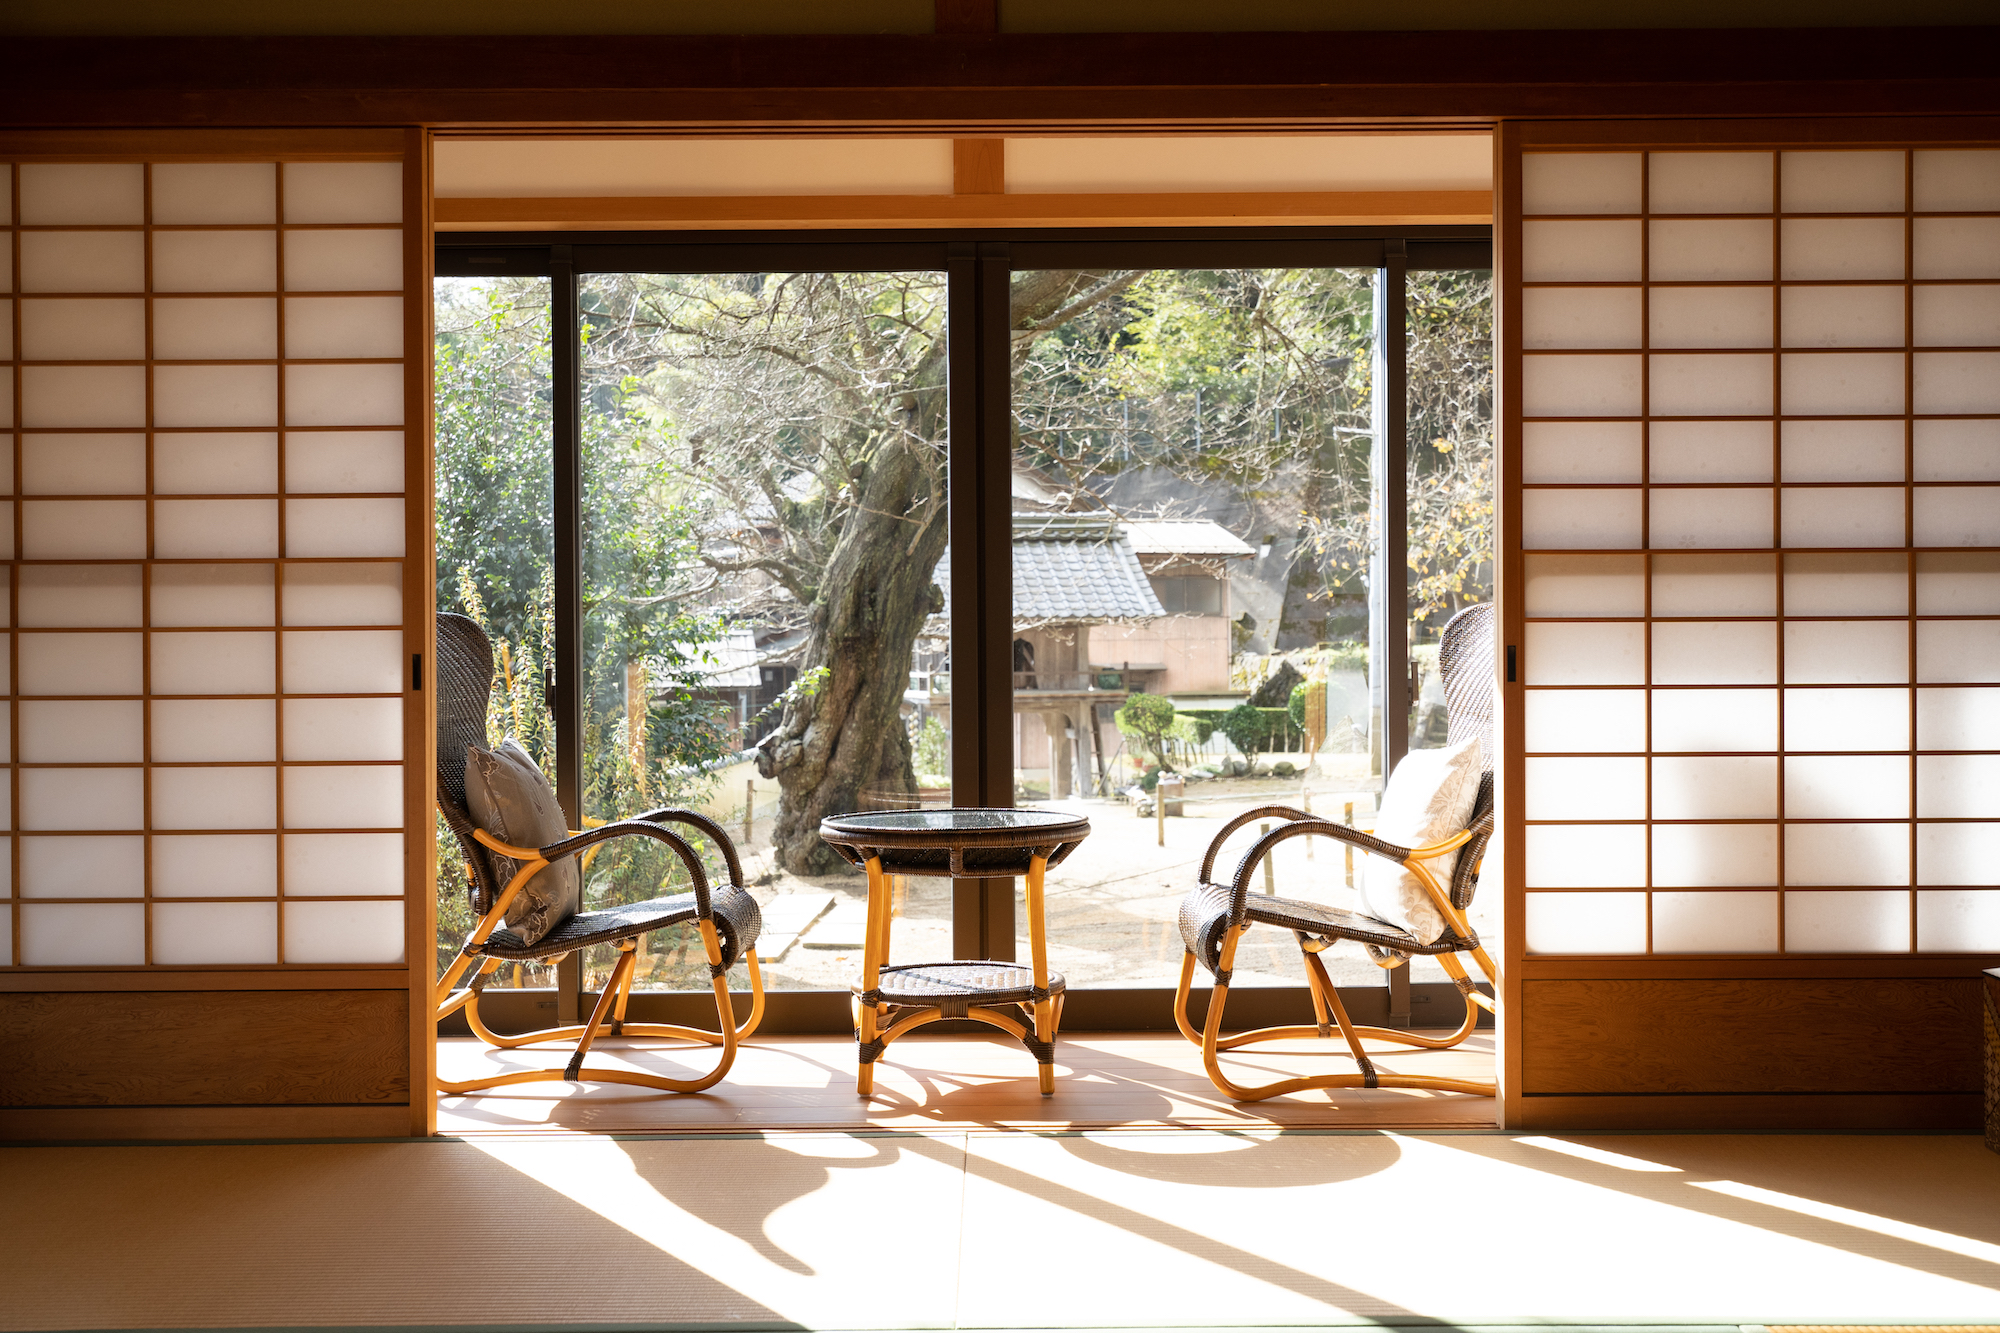 「一本桜のお寺」の宿坊。「日本のベネチア」と称される「伊根の舟屋」の中心に位置し、その美しい景色に心が洗われる。